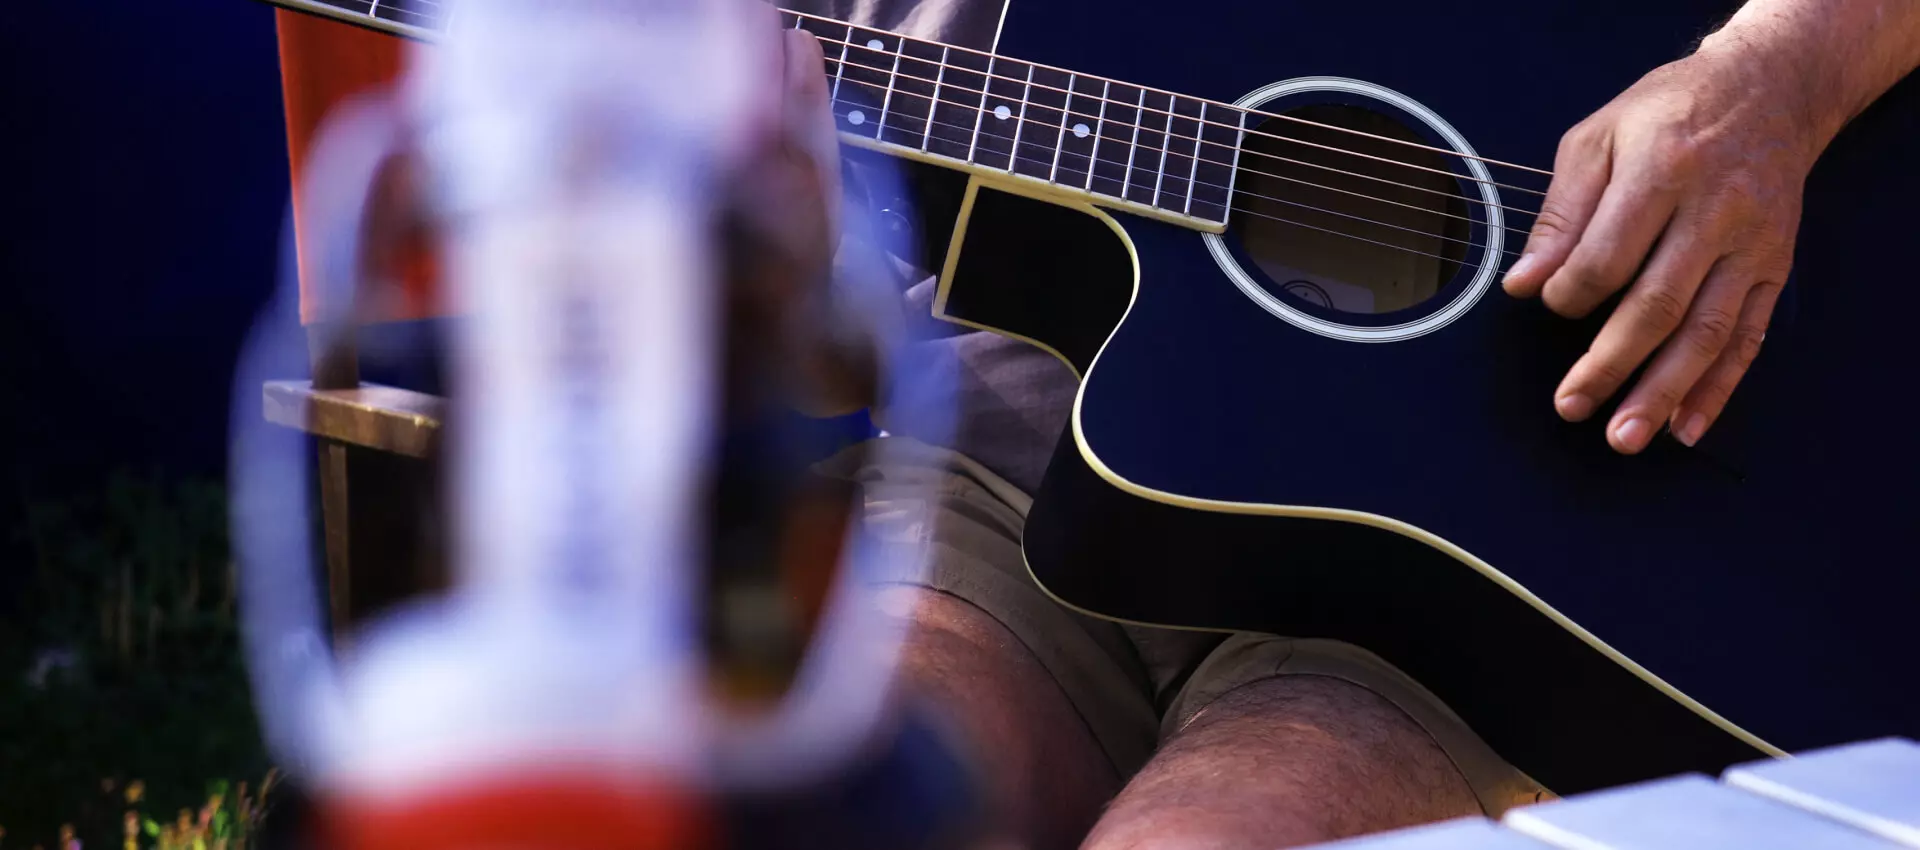 Flasche Flensburger Pilsener vorne in der Unschärfe; im Hintergrund eine Hand, die Gitarre spielt.